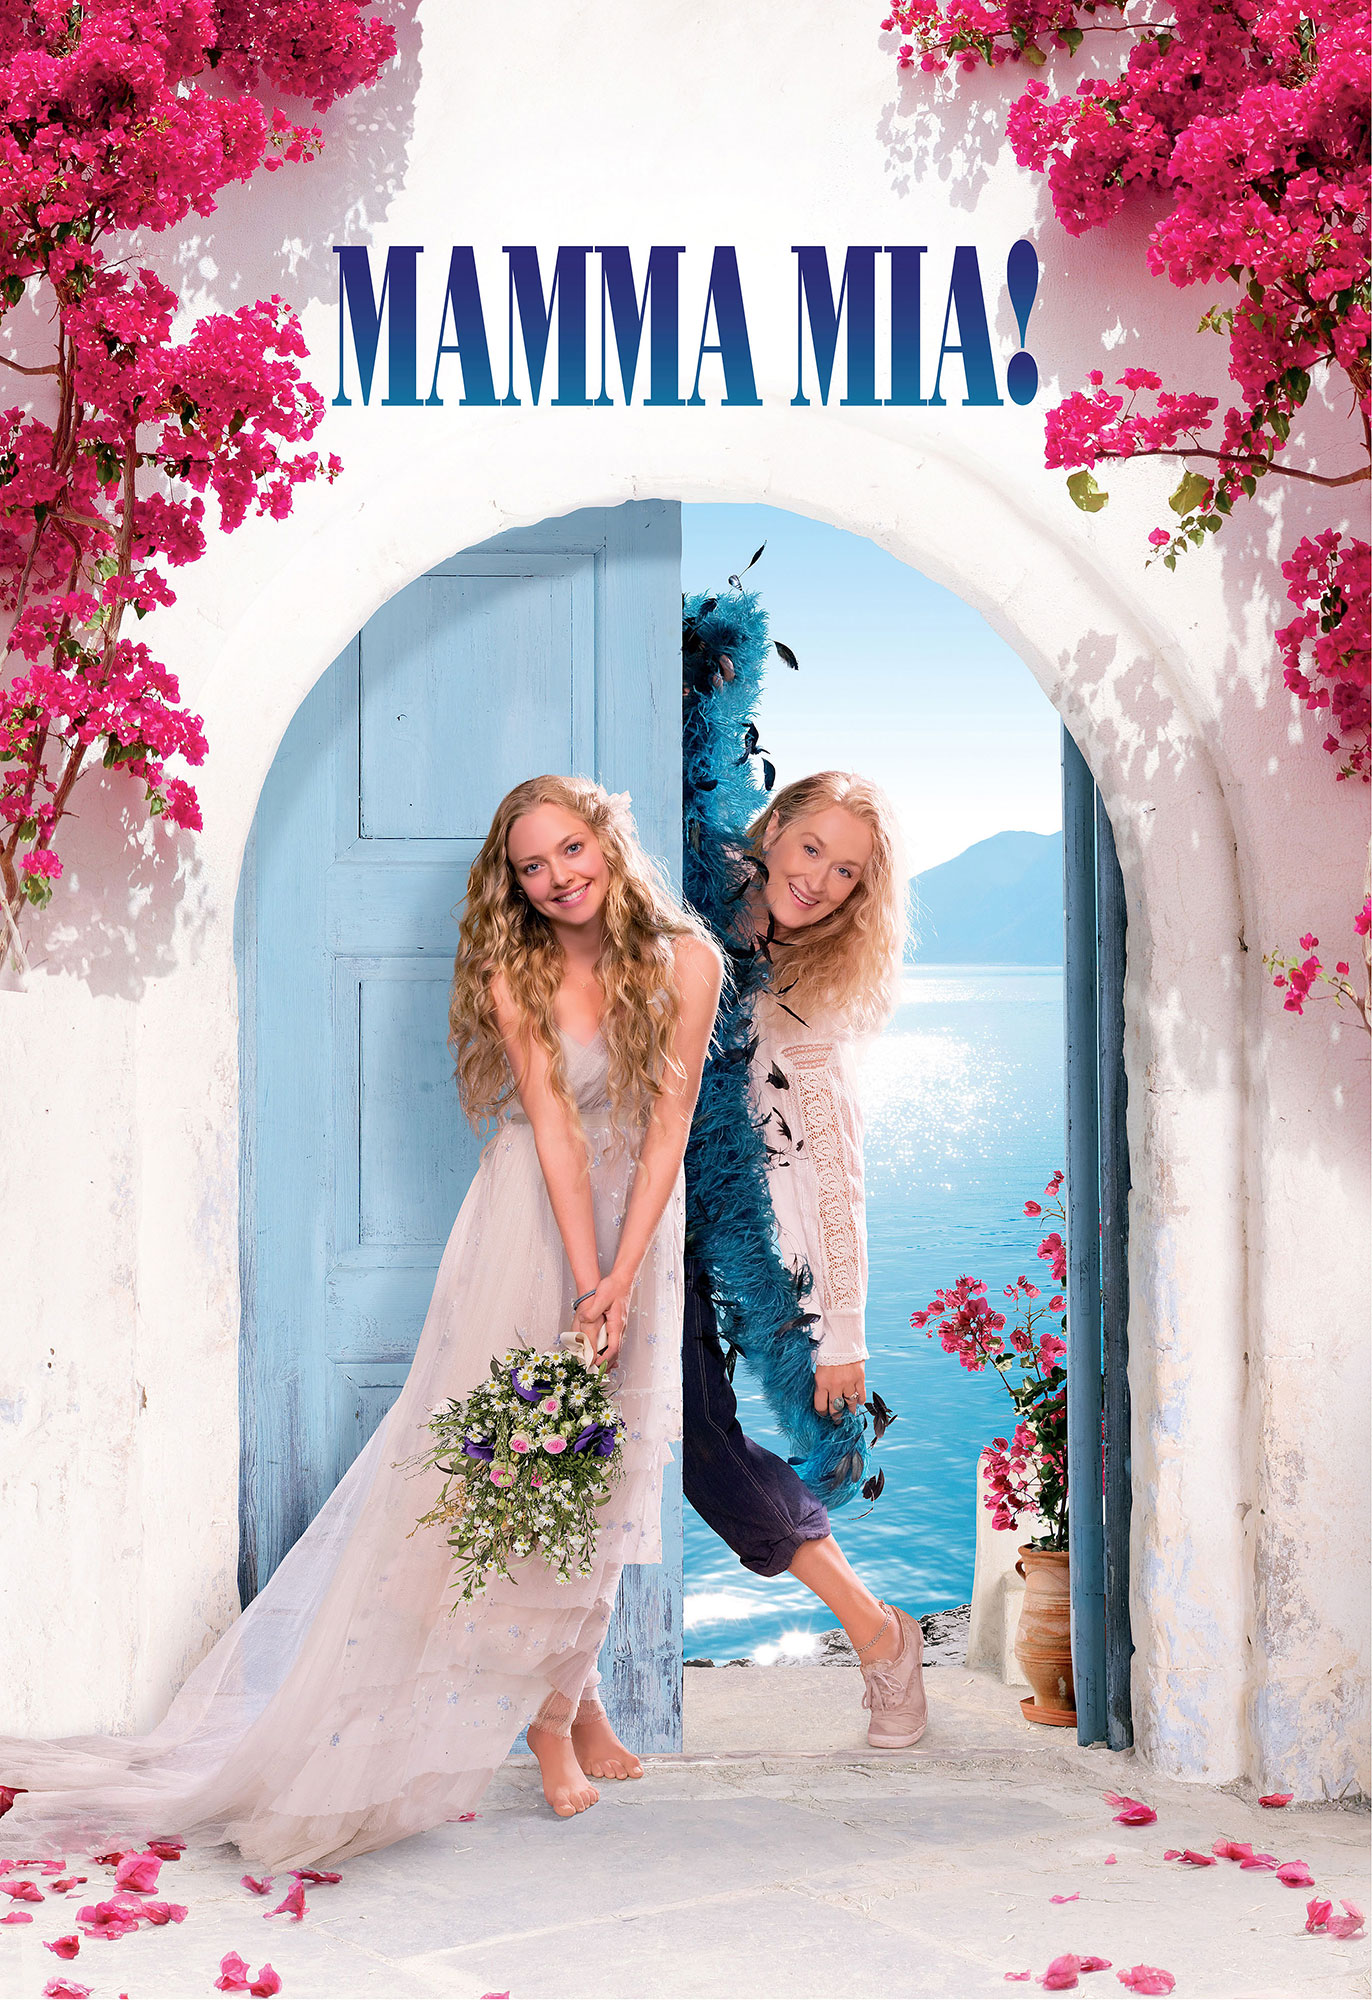 Mamma Mia' Cast: Where Are They Now?